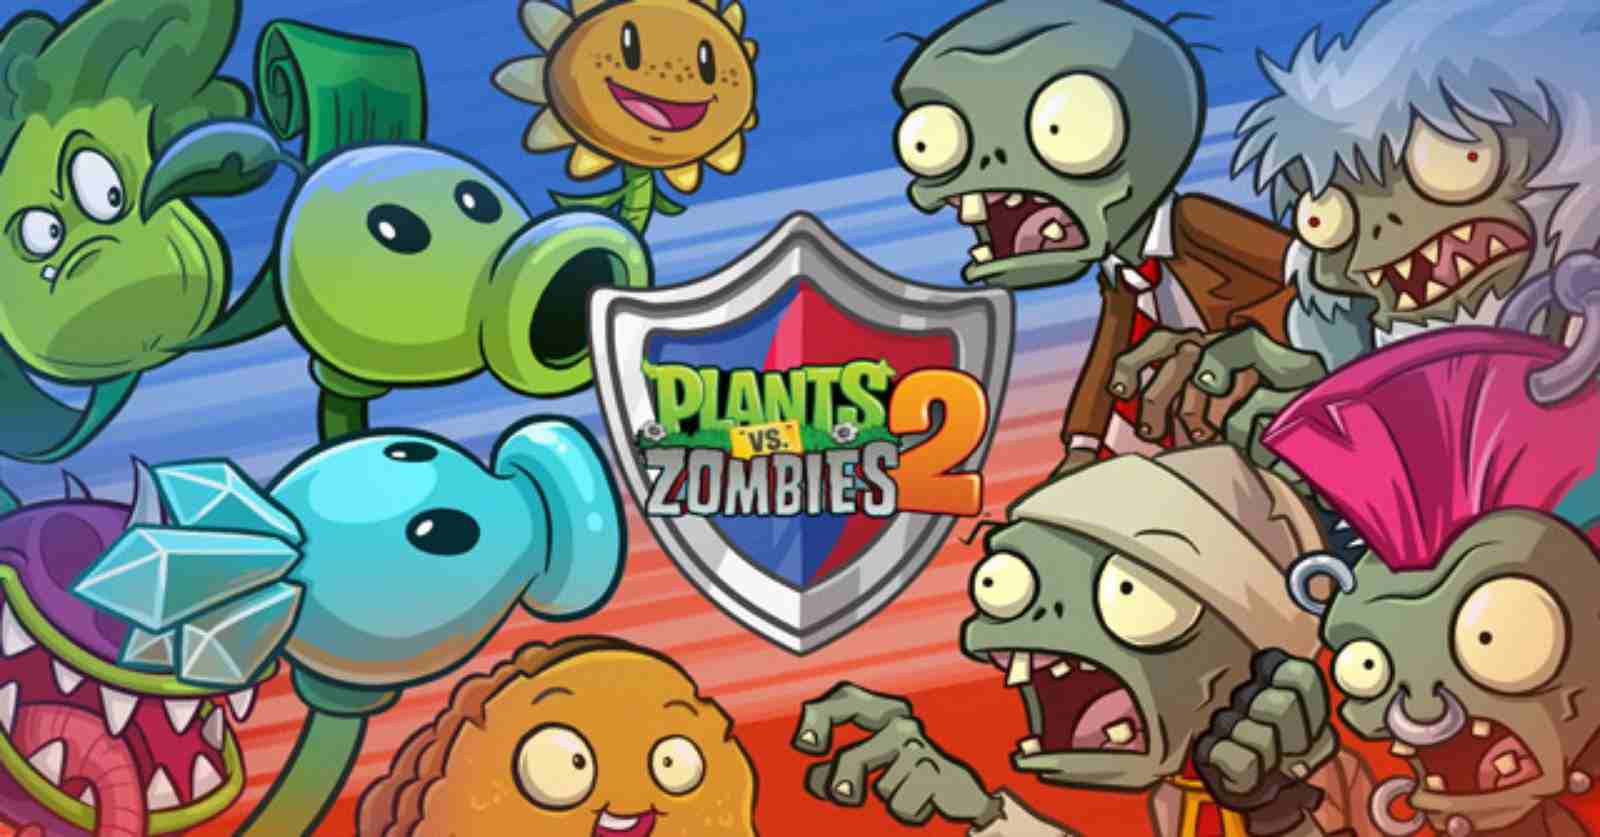 Hack Plants vs Zombies 2 MOD (Menu Pro, Tất Cả Tính Năng, Cấp Độ Max) APK 11.4.1